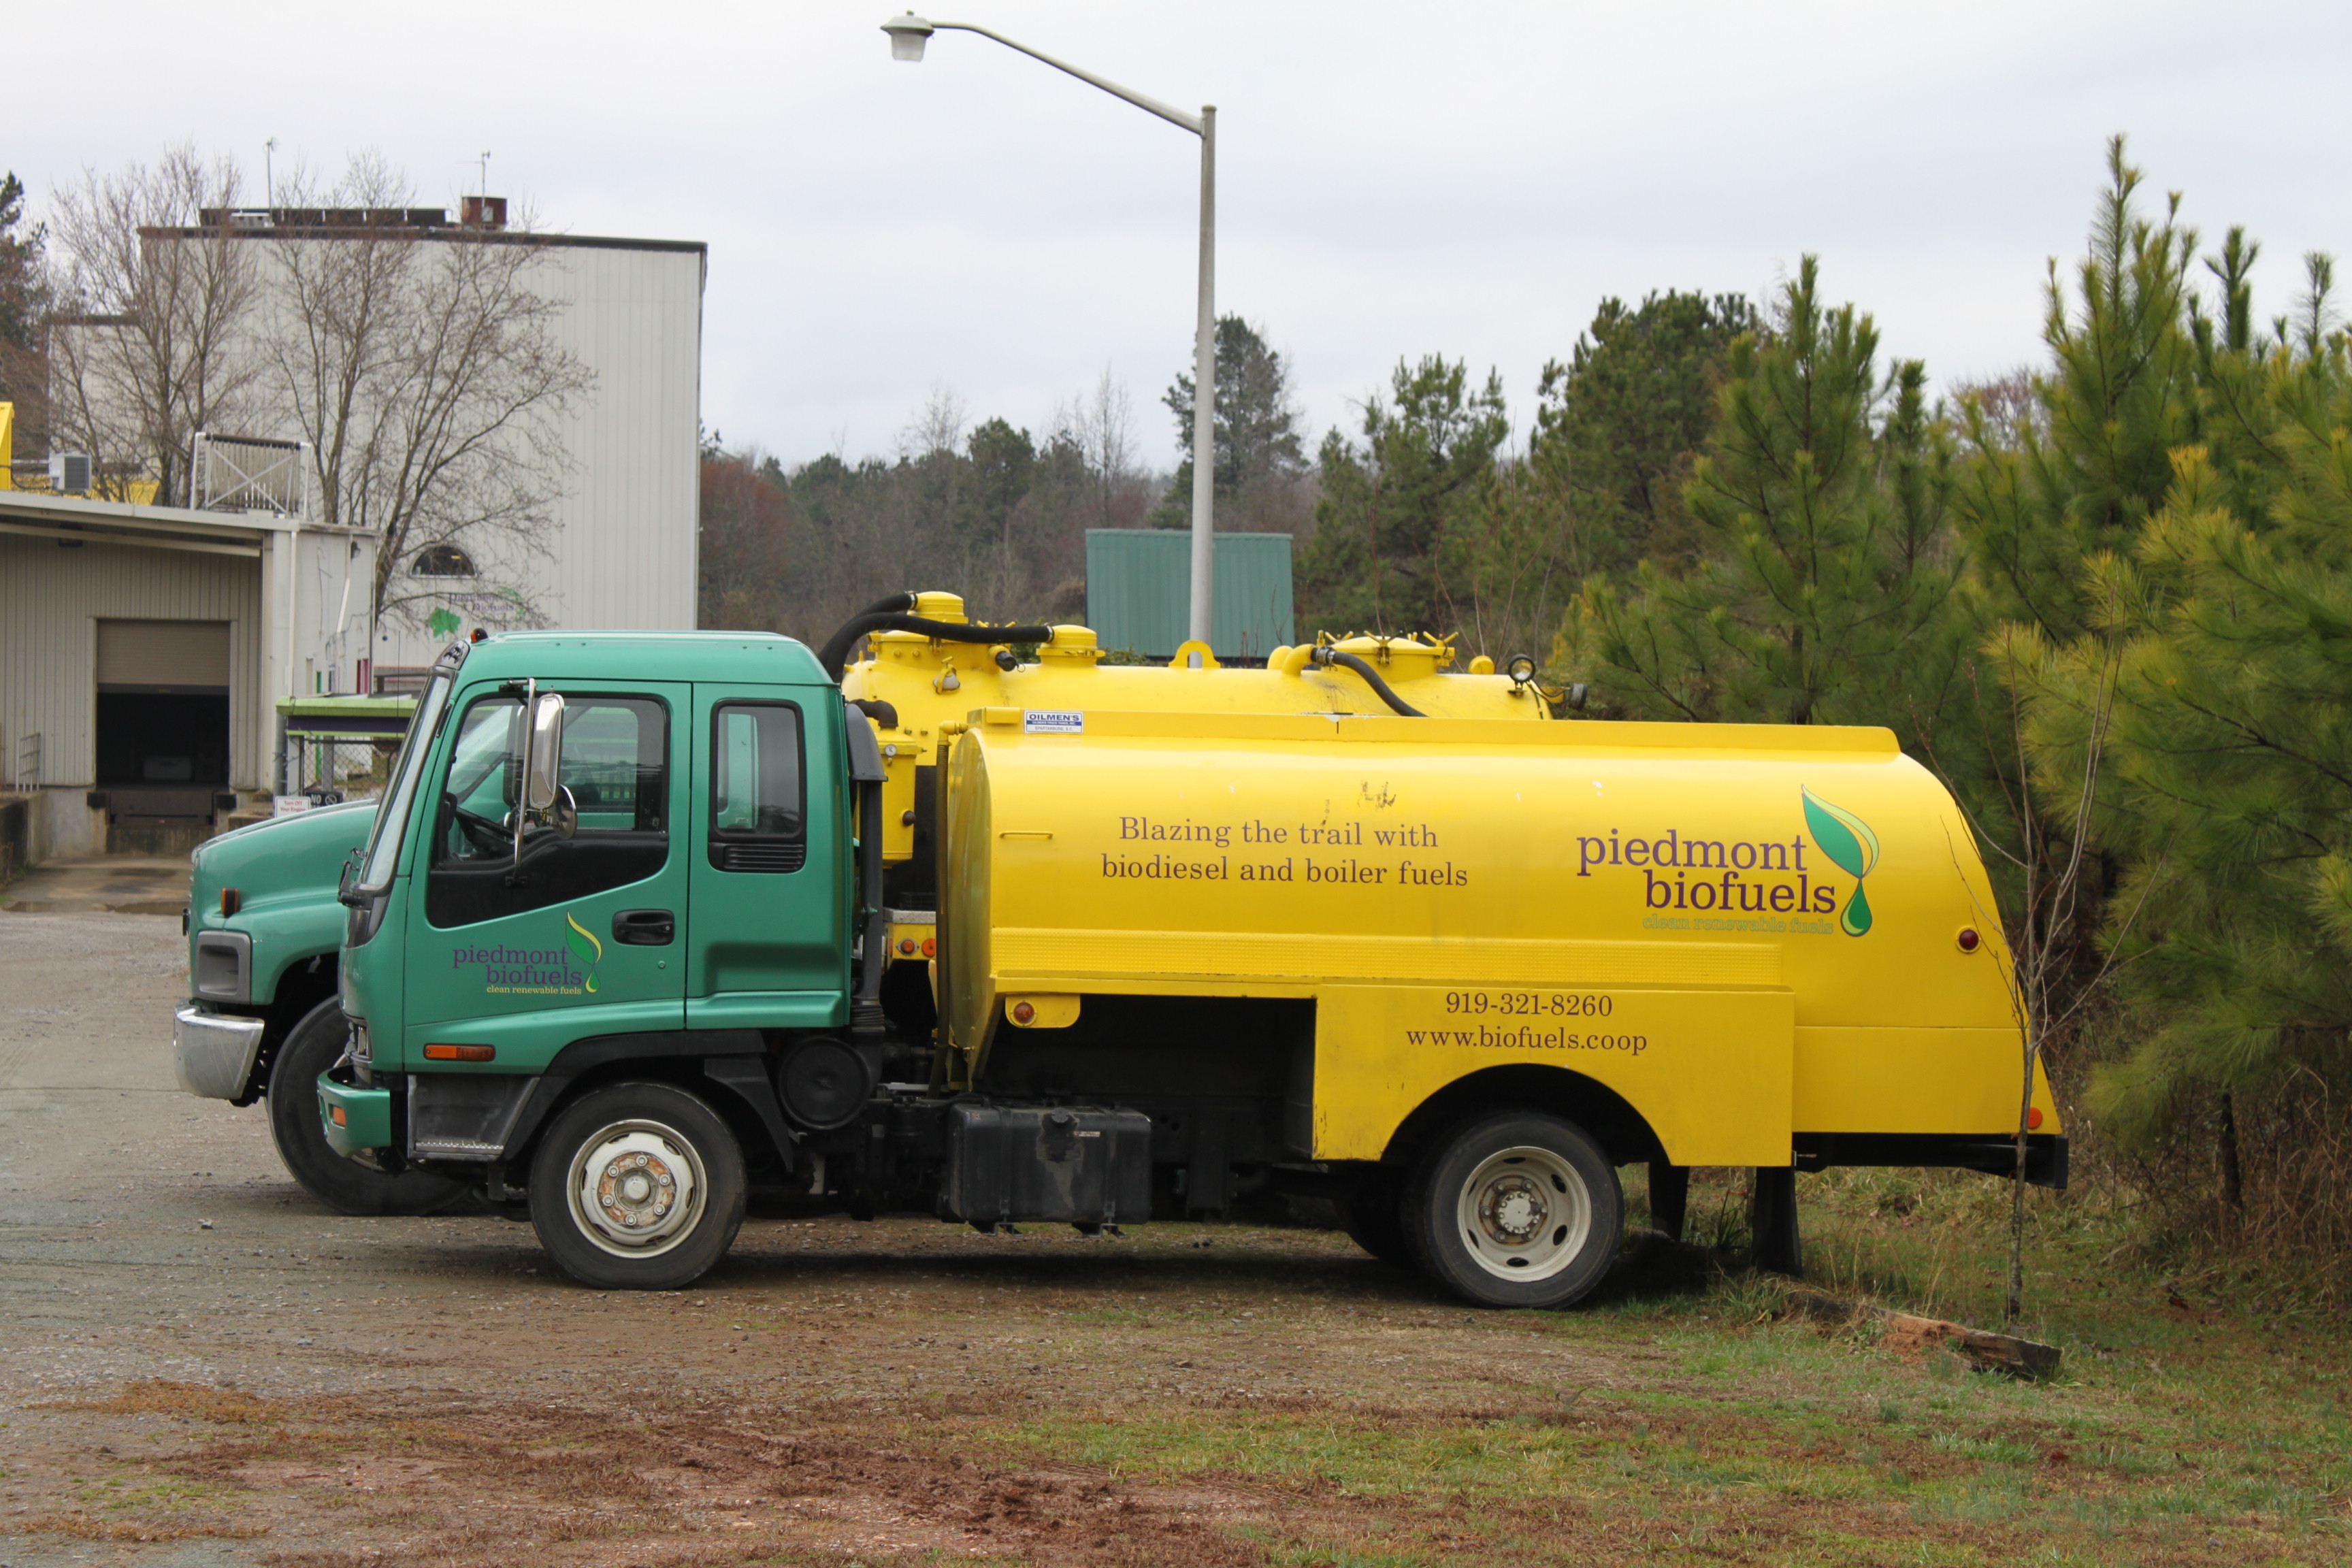 Piedmont Biofuels truck